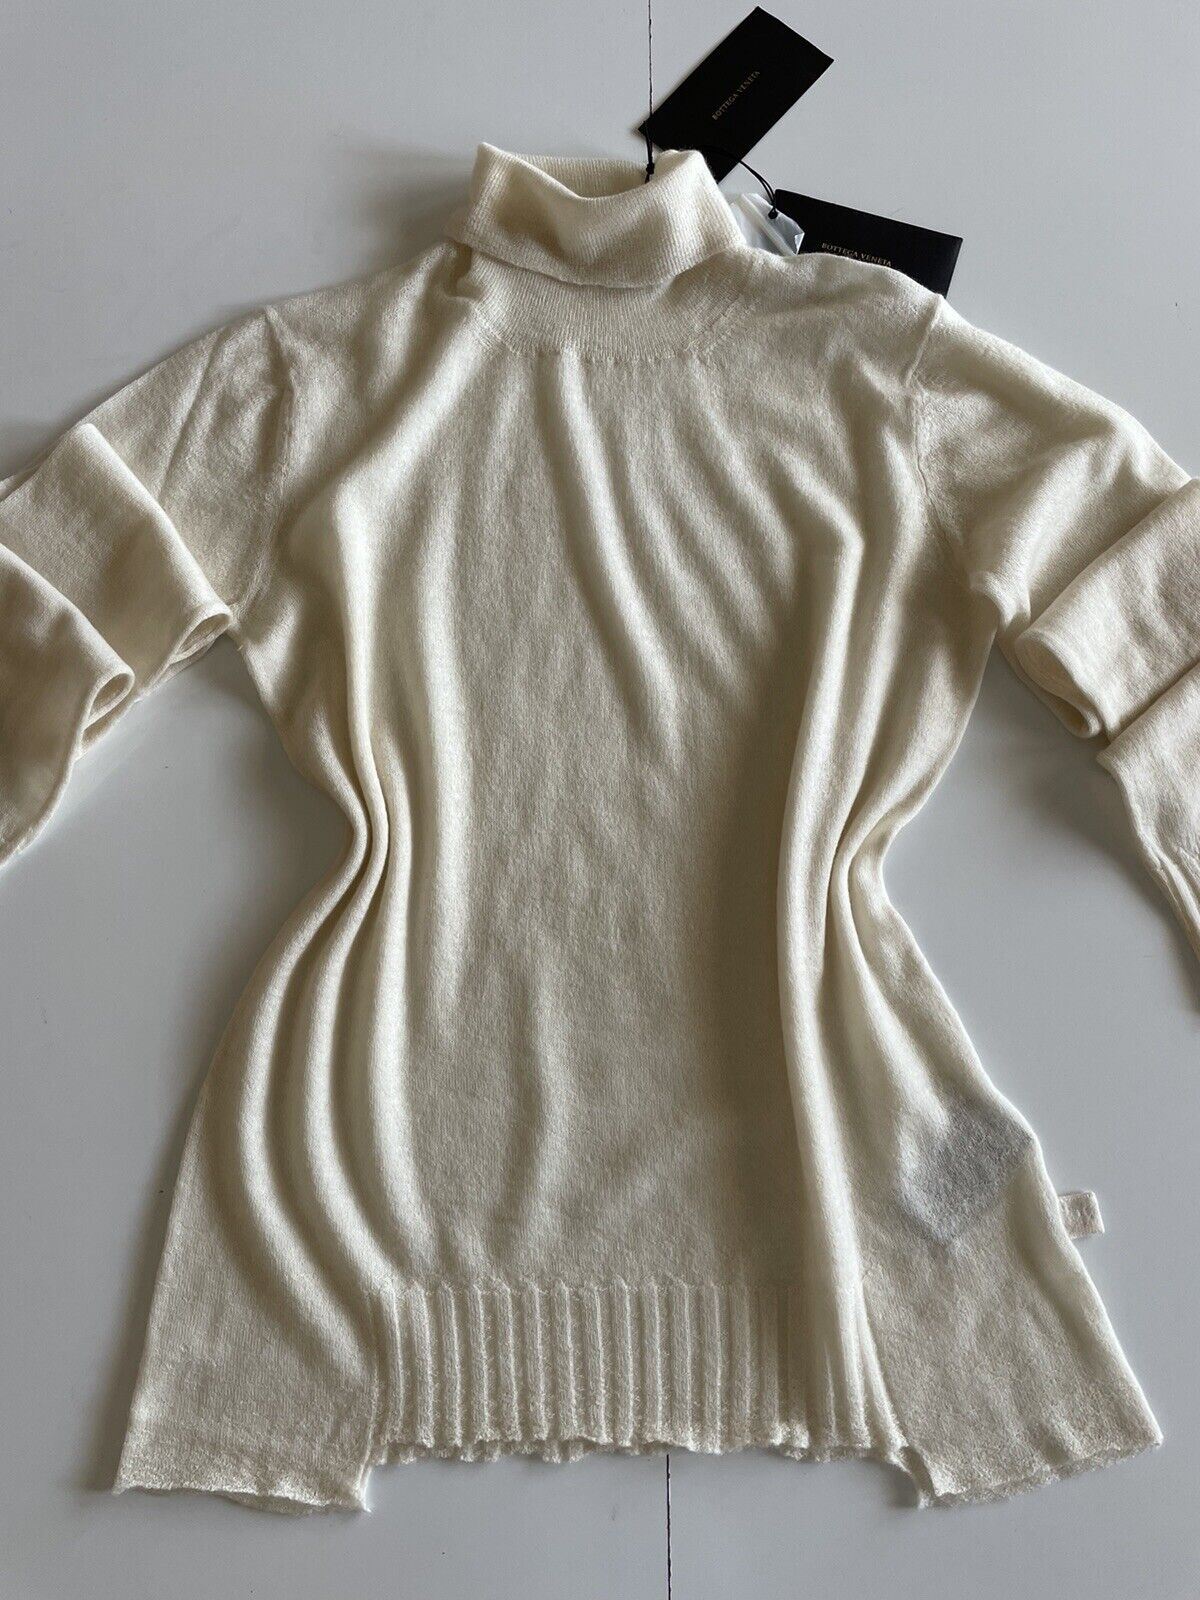 СЗТ 1150 долларов США Bottega Veneta Женский кашемировый свитер желто-коричневого цвета 3 США (42 Bottega) 601699